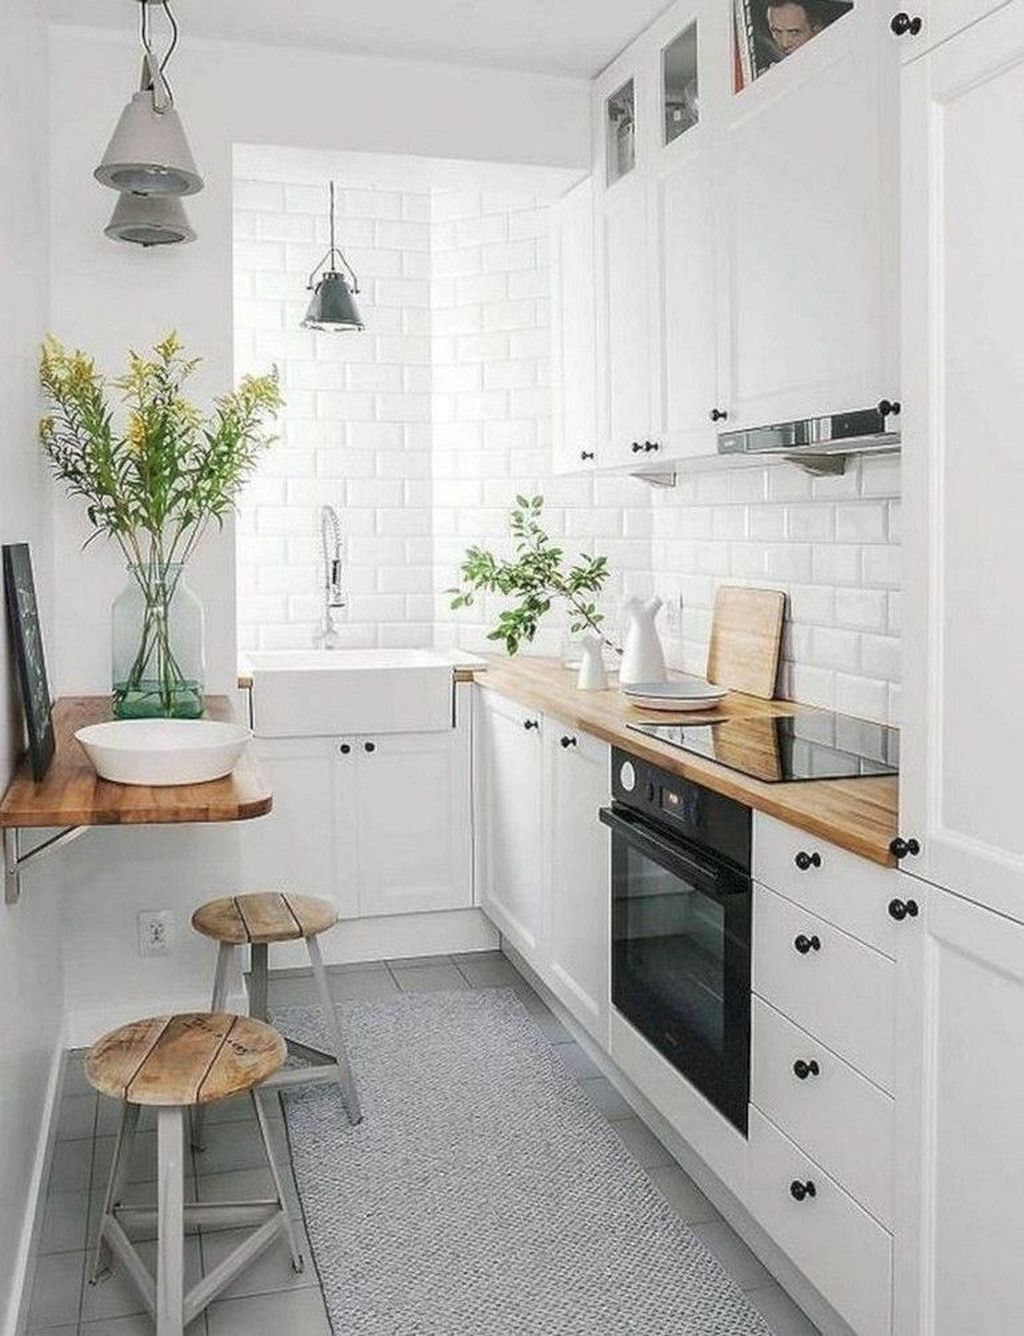 12 thiết kế bếp nhỏ đầy ấn tượng và thông minh dành cho các căn chung cư có diện tích hẹp - Ảnh 2.